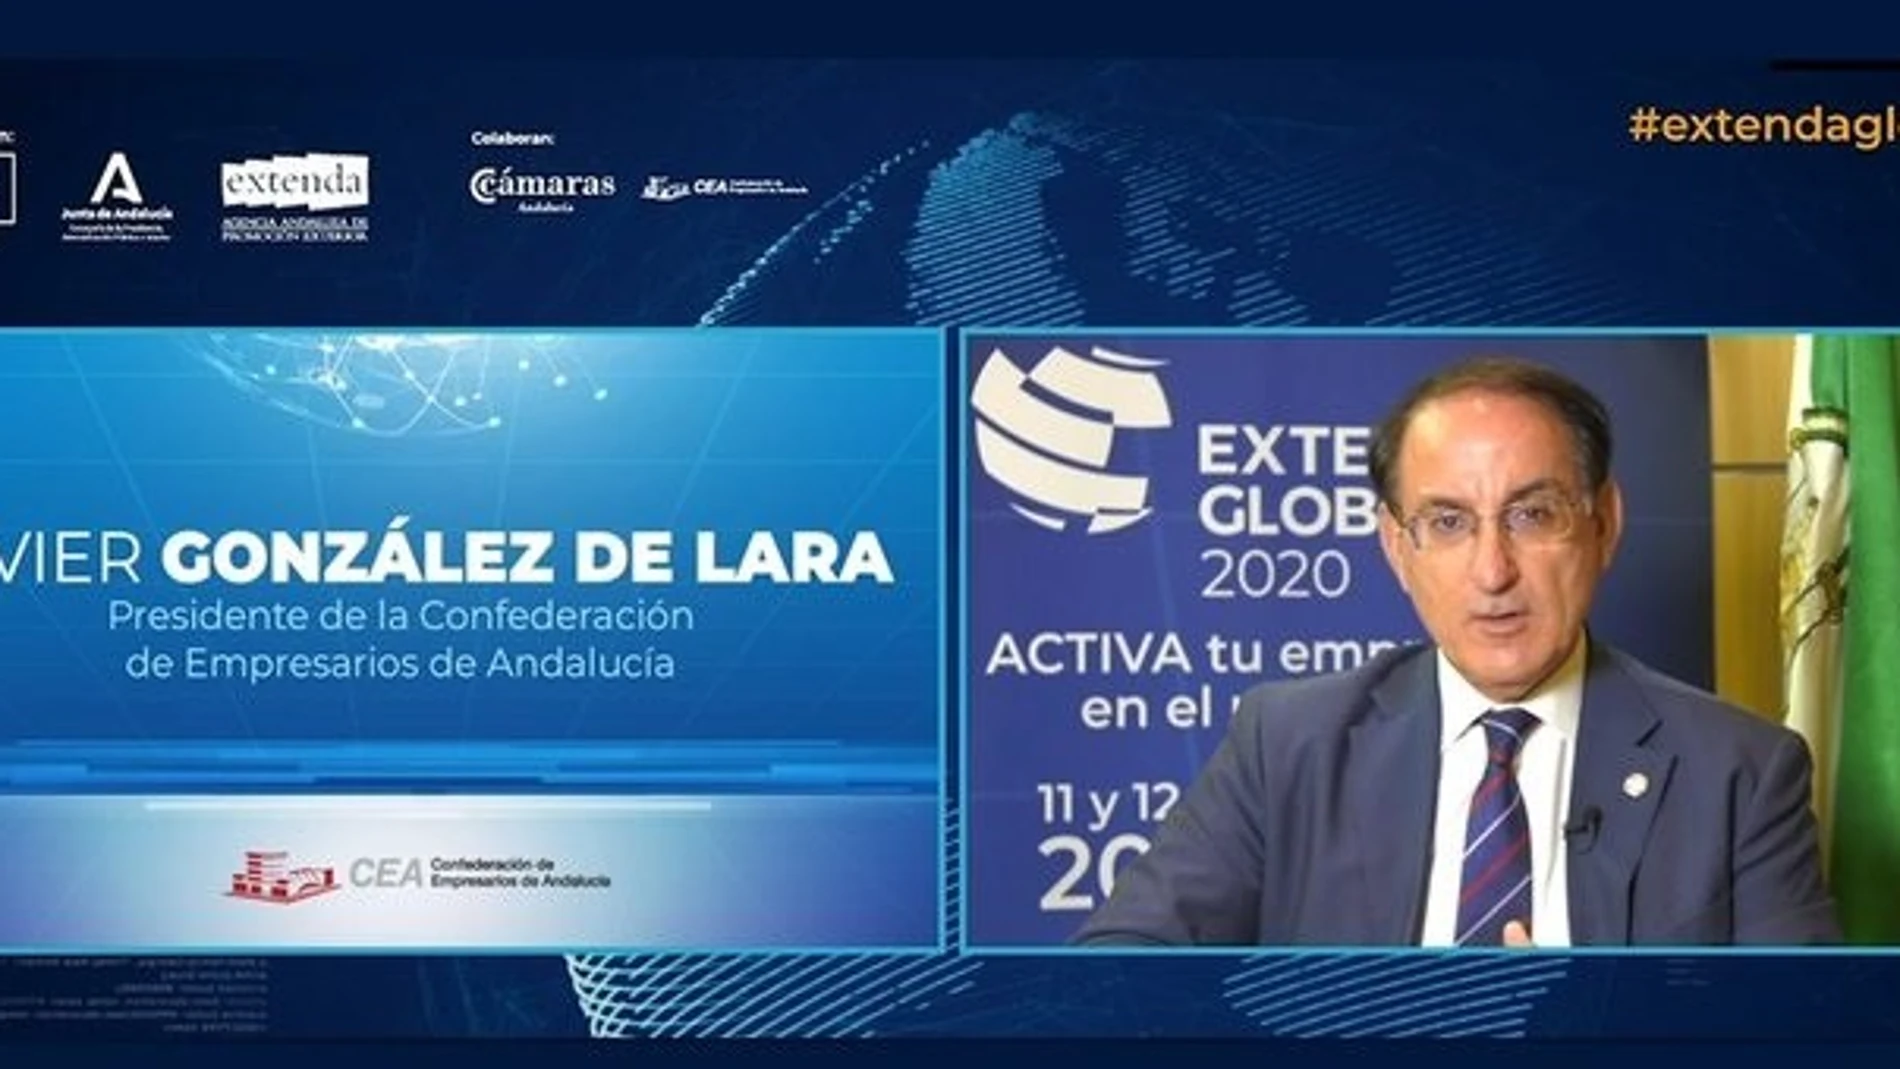 El presidente de la CEA, Javier González de Lara, durante su intervención en Extenda Global 2020